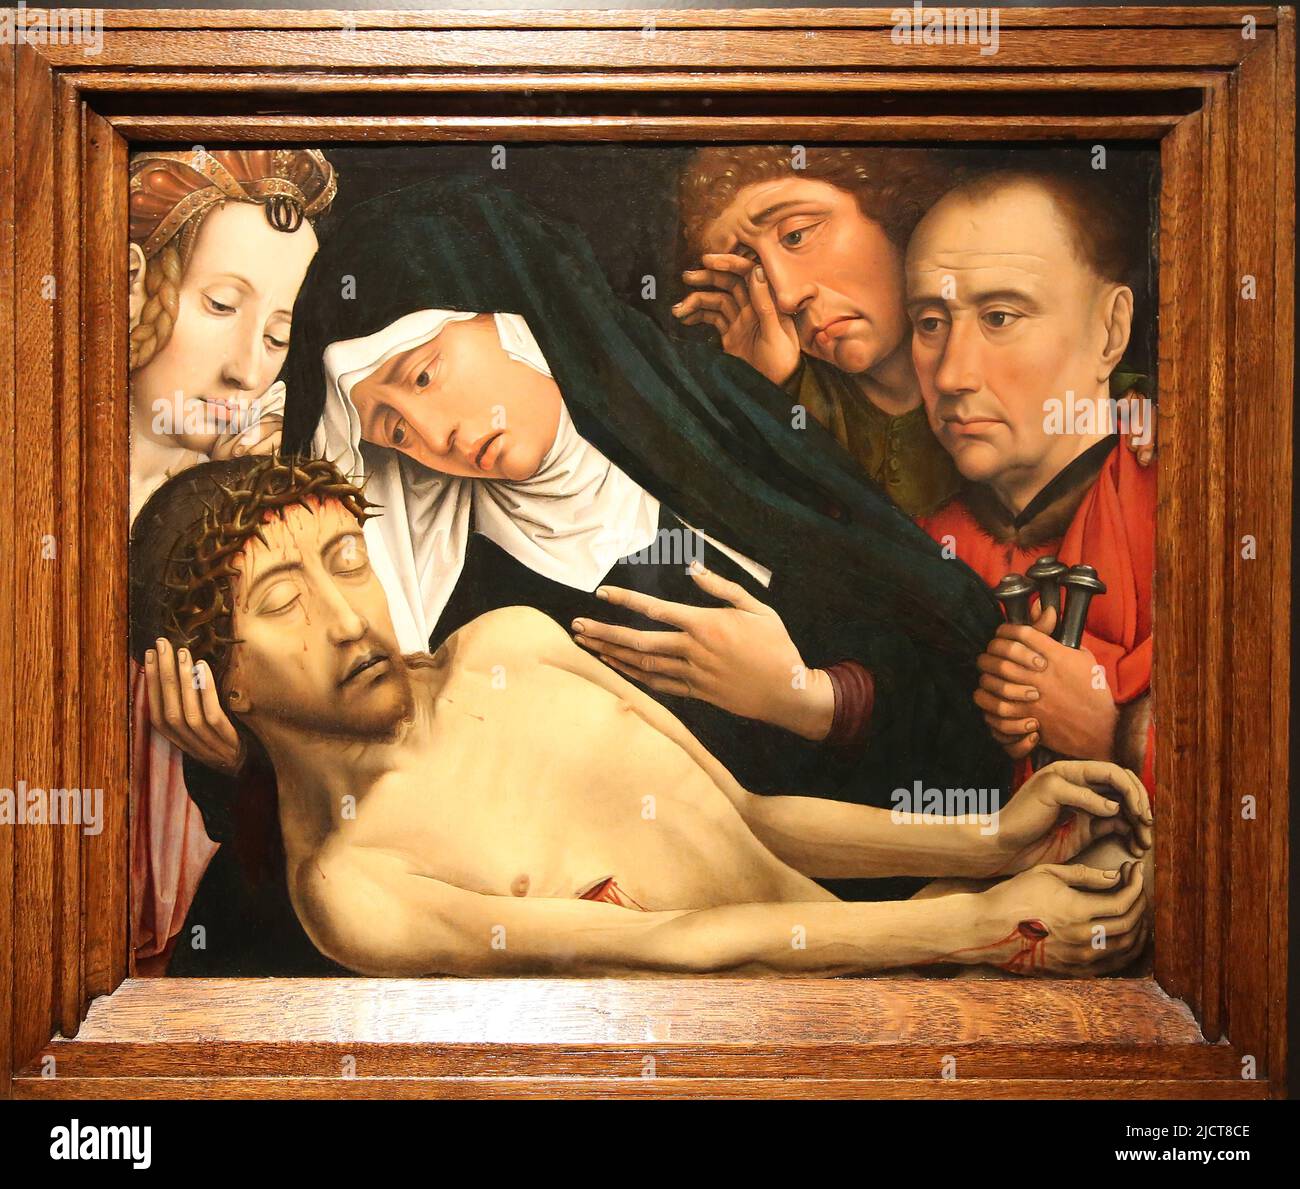 La Lamentation du Christ, par Colijn de COTER (1450/55-152/32). Bruxelles, c. 1510-1515. Huile sur le panneau. Rijksmuseum. Amsterdam. Pays-Bas. Banque D'Images